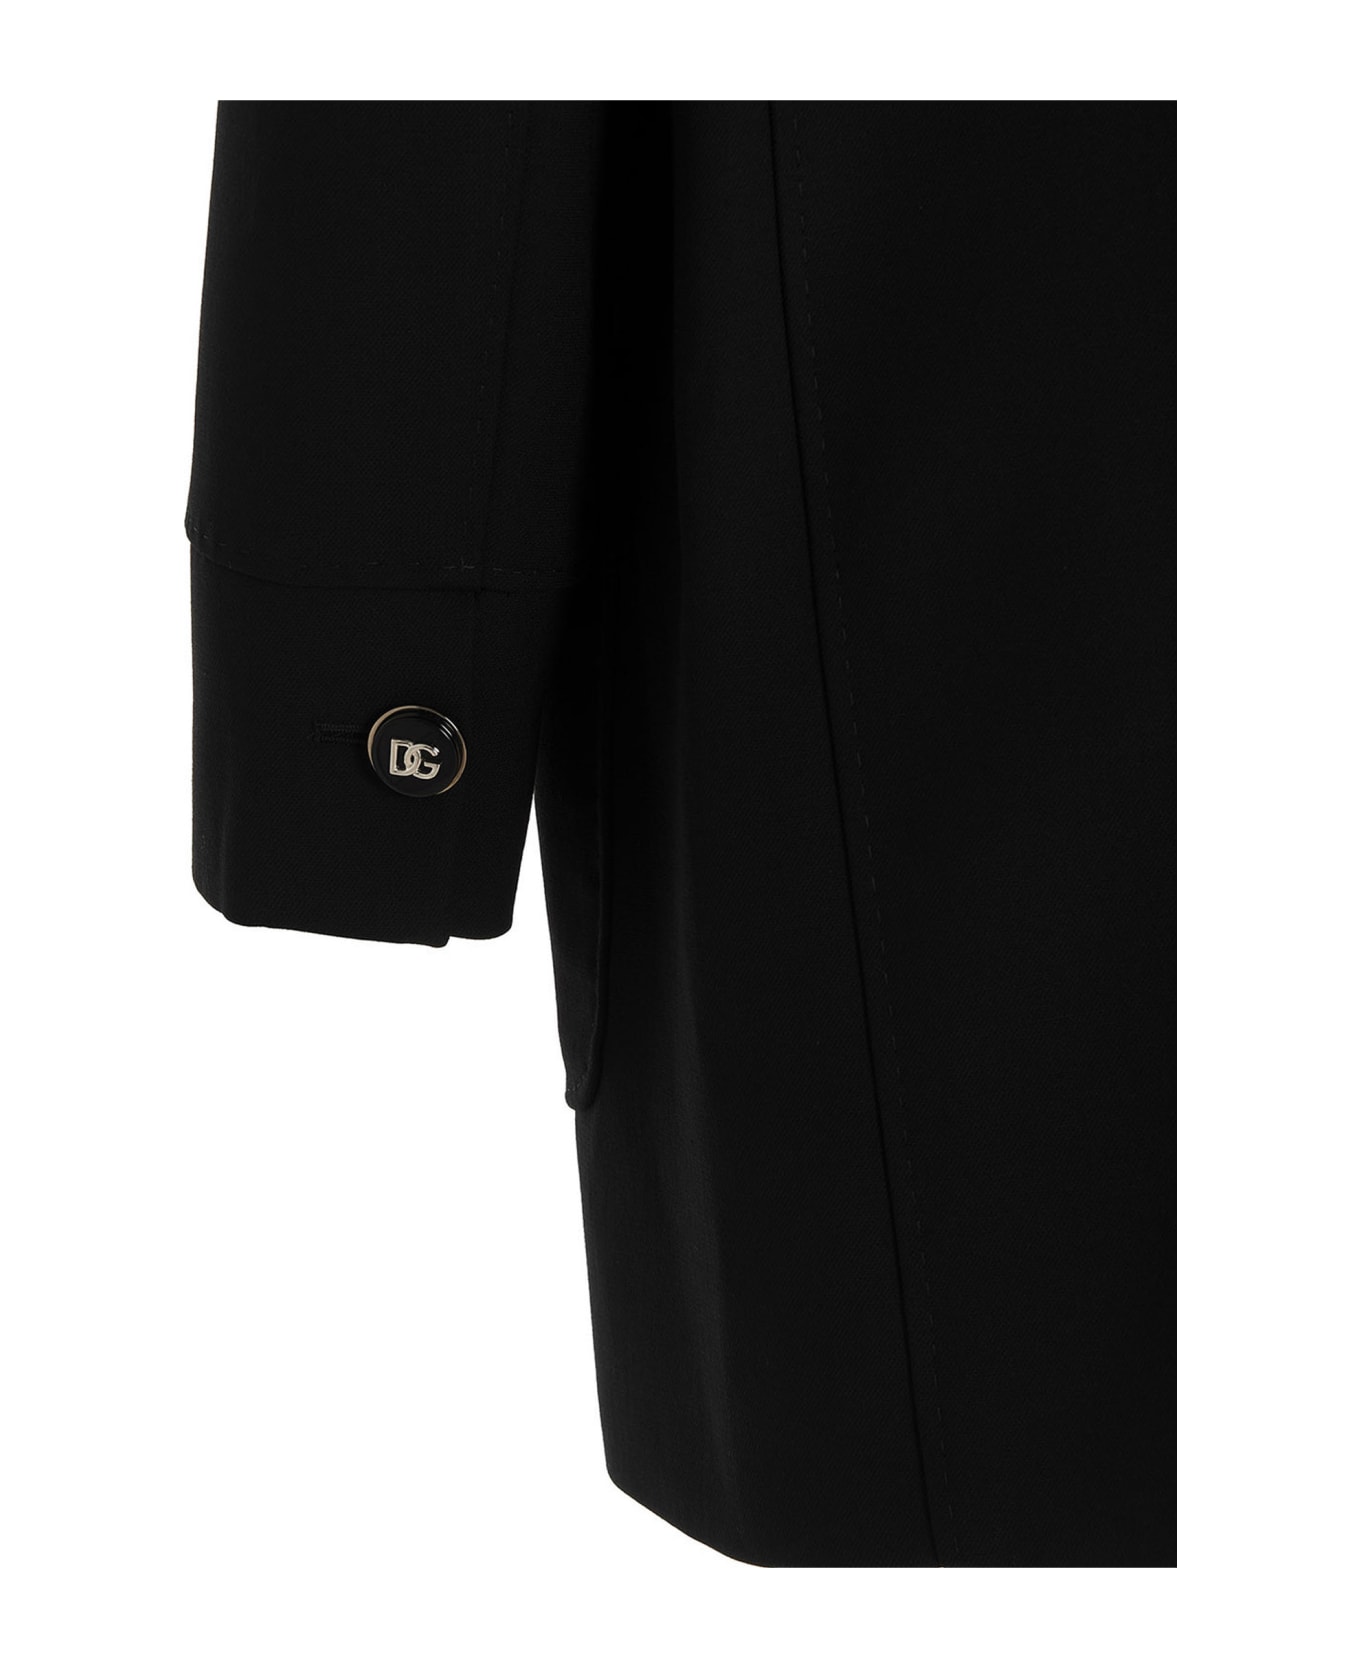 Dolce & Gabbana Logo Button Coat - Black  